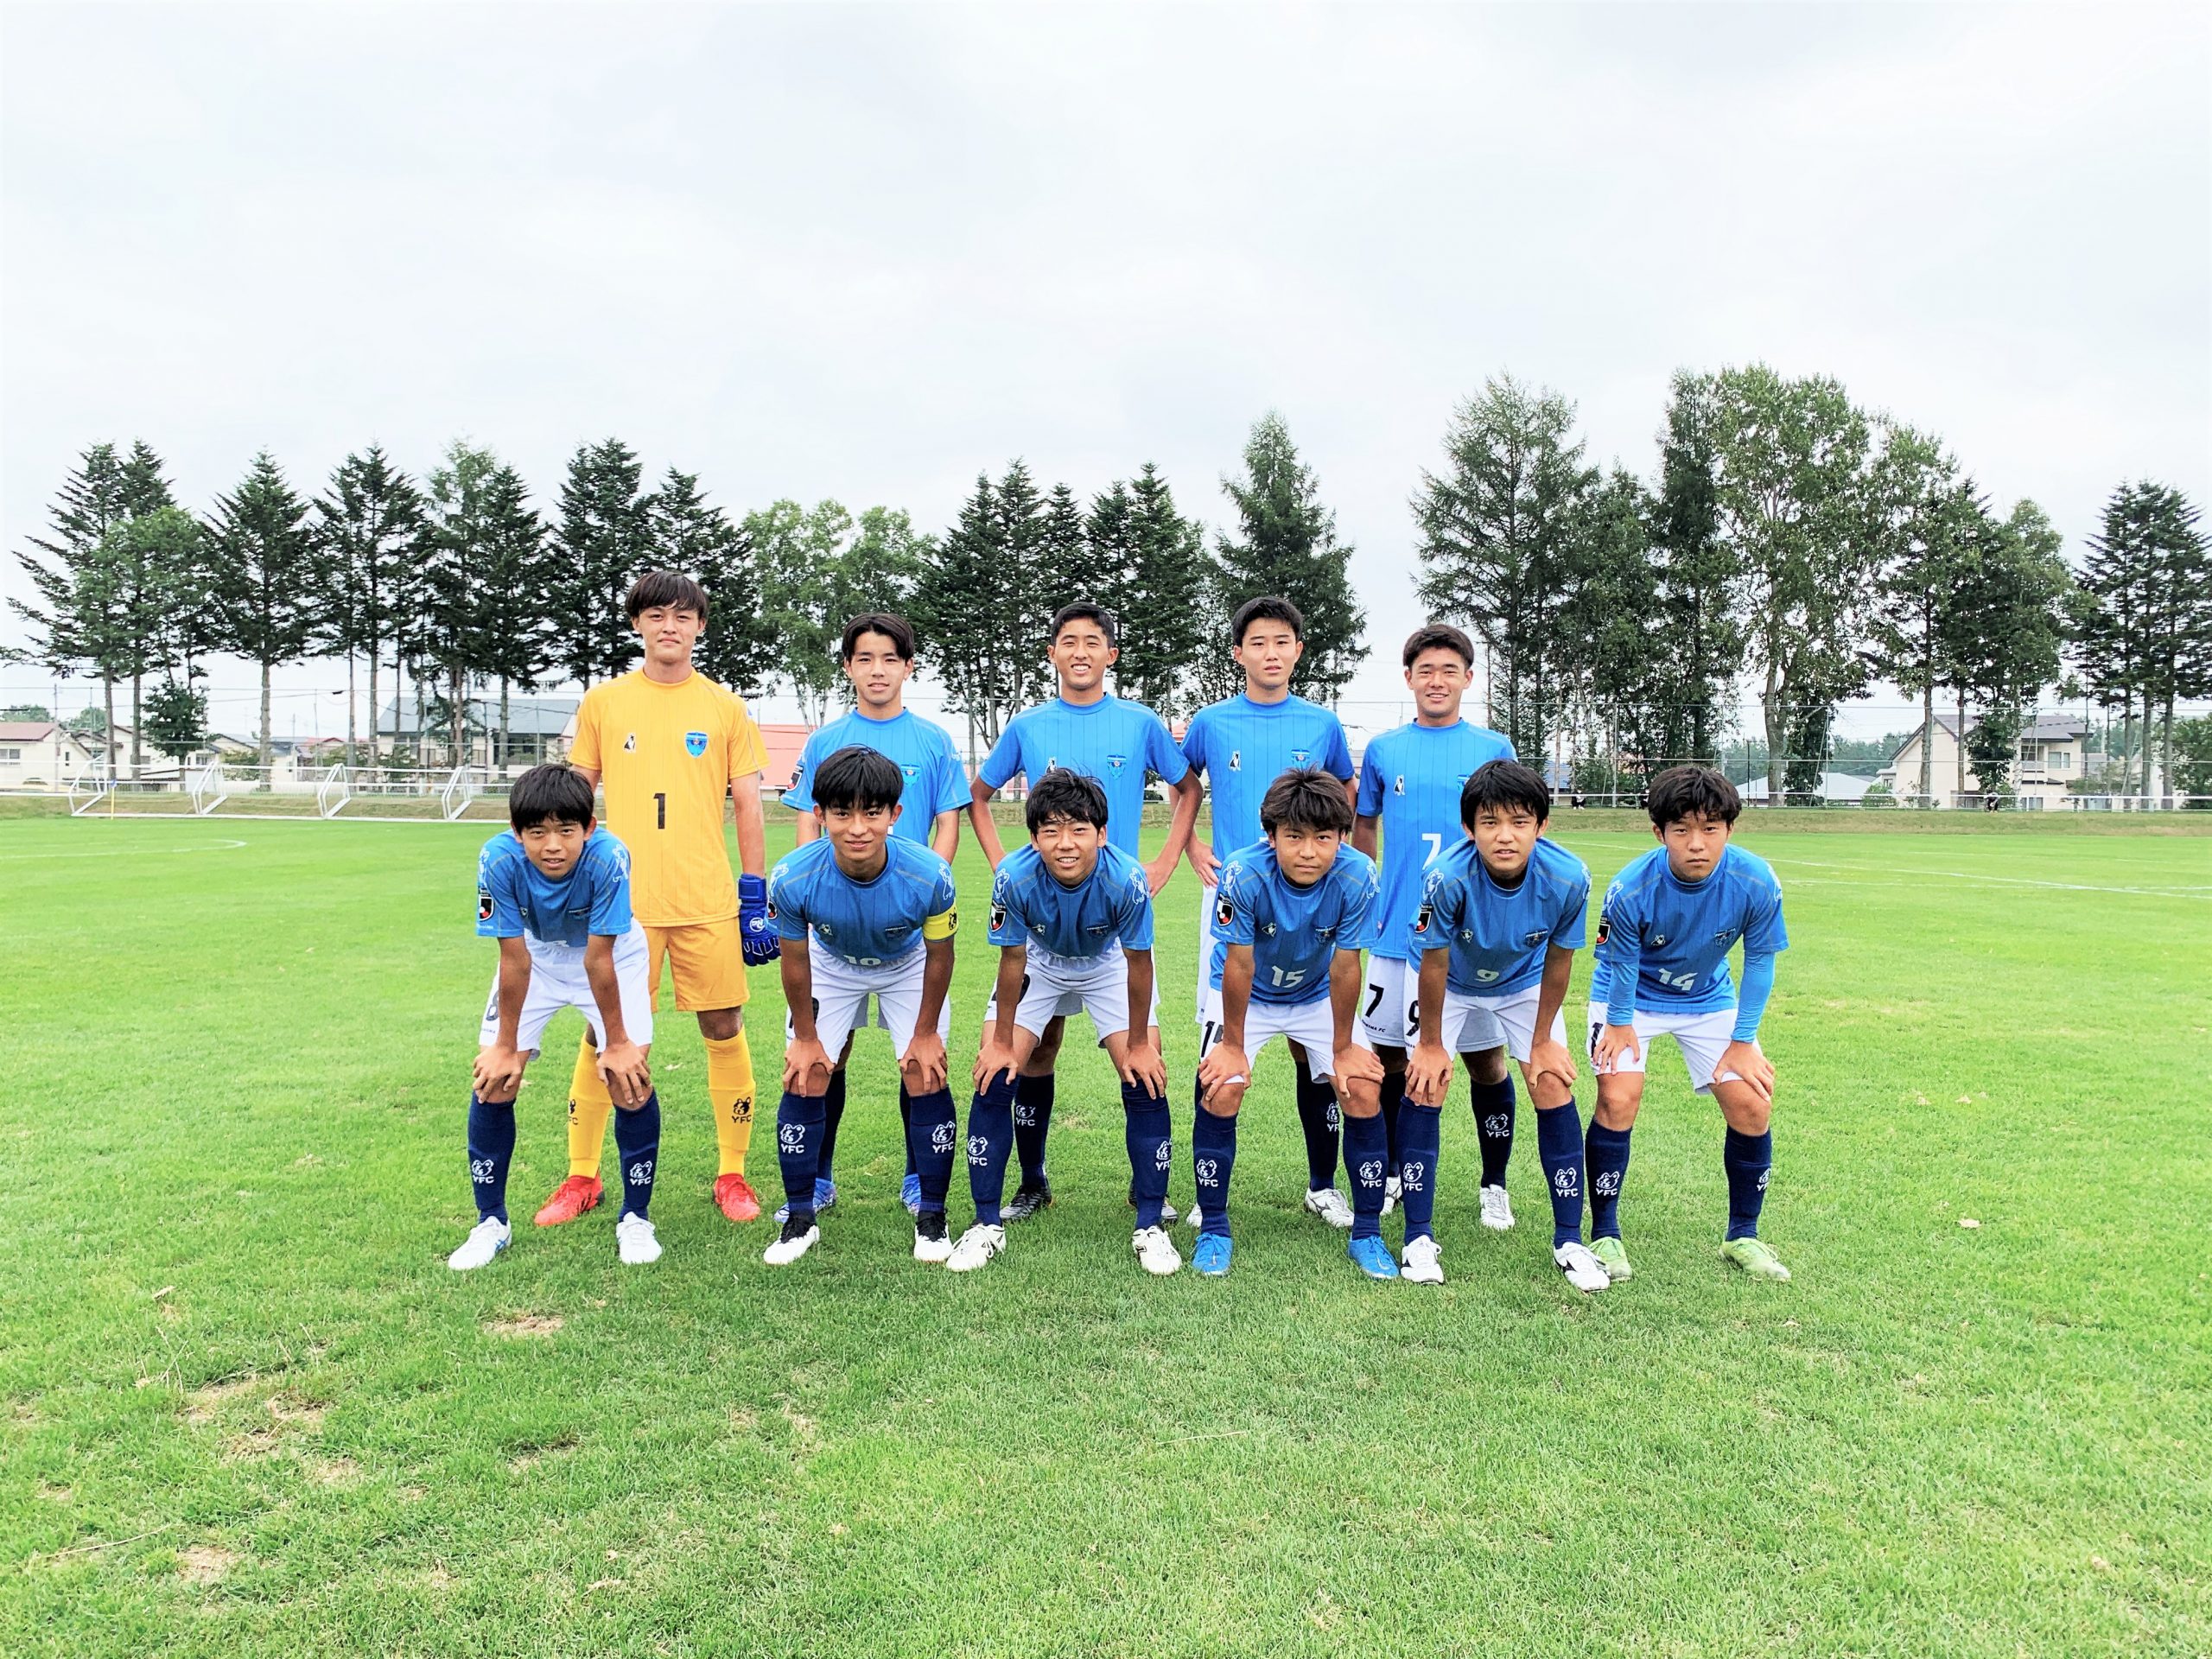 ジュニアユース 第36回 日本クラブユースサッカー選手権 U 15 大会 グループステージ突破のお知らせ 横浜fcオフィシャルウェブサイト